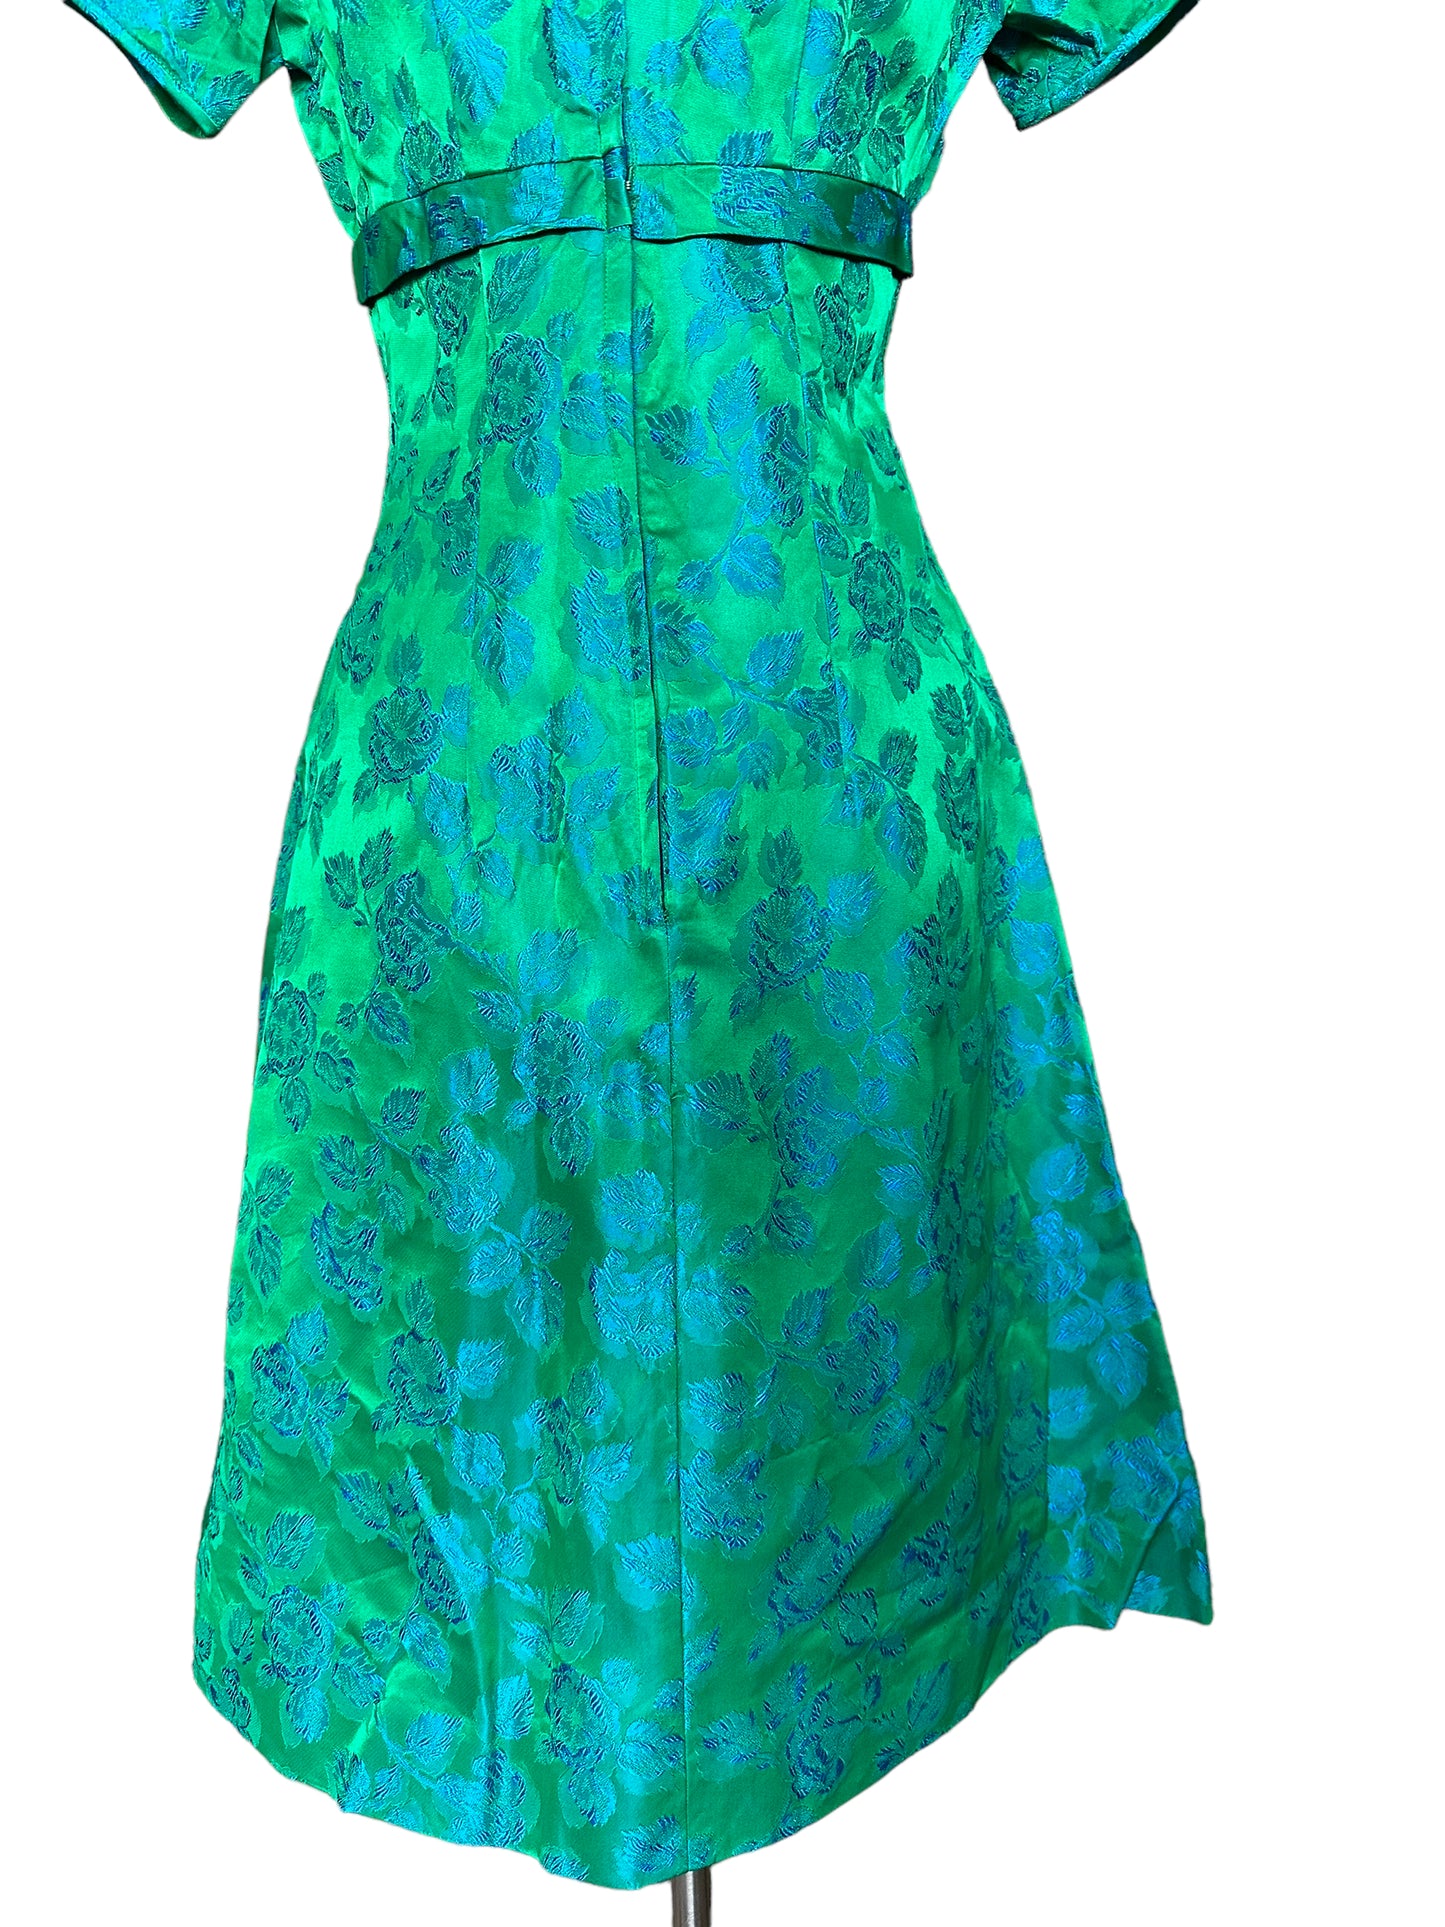 Back side skirt view of Vintage 1950s Blue/Green Brocade Dress |  Barn Owl Vintage Seattle | True Vintage Dresses